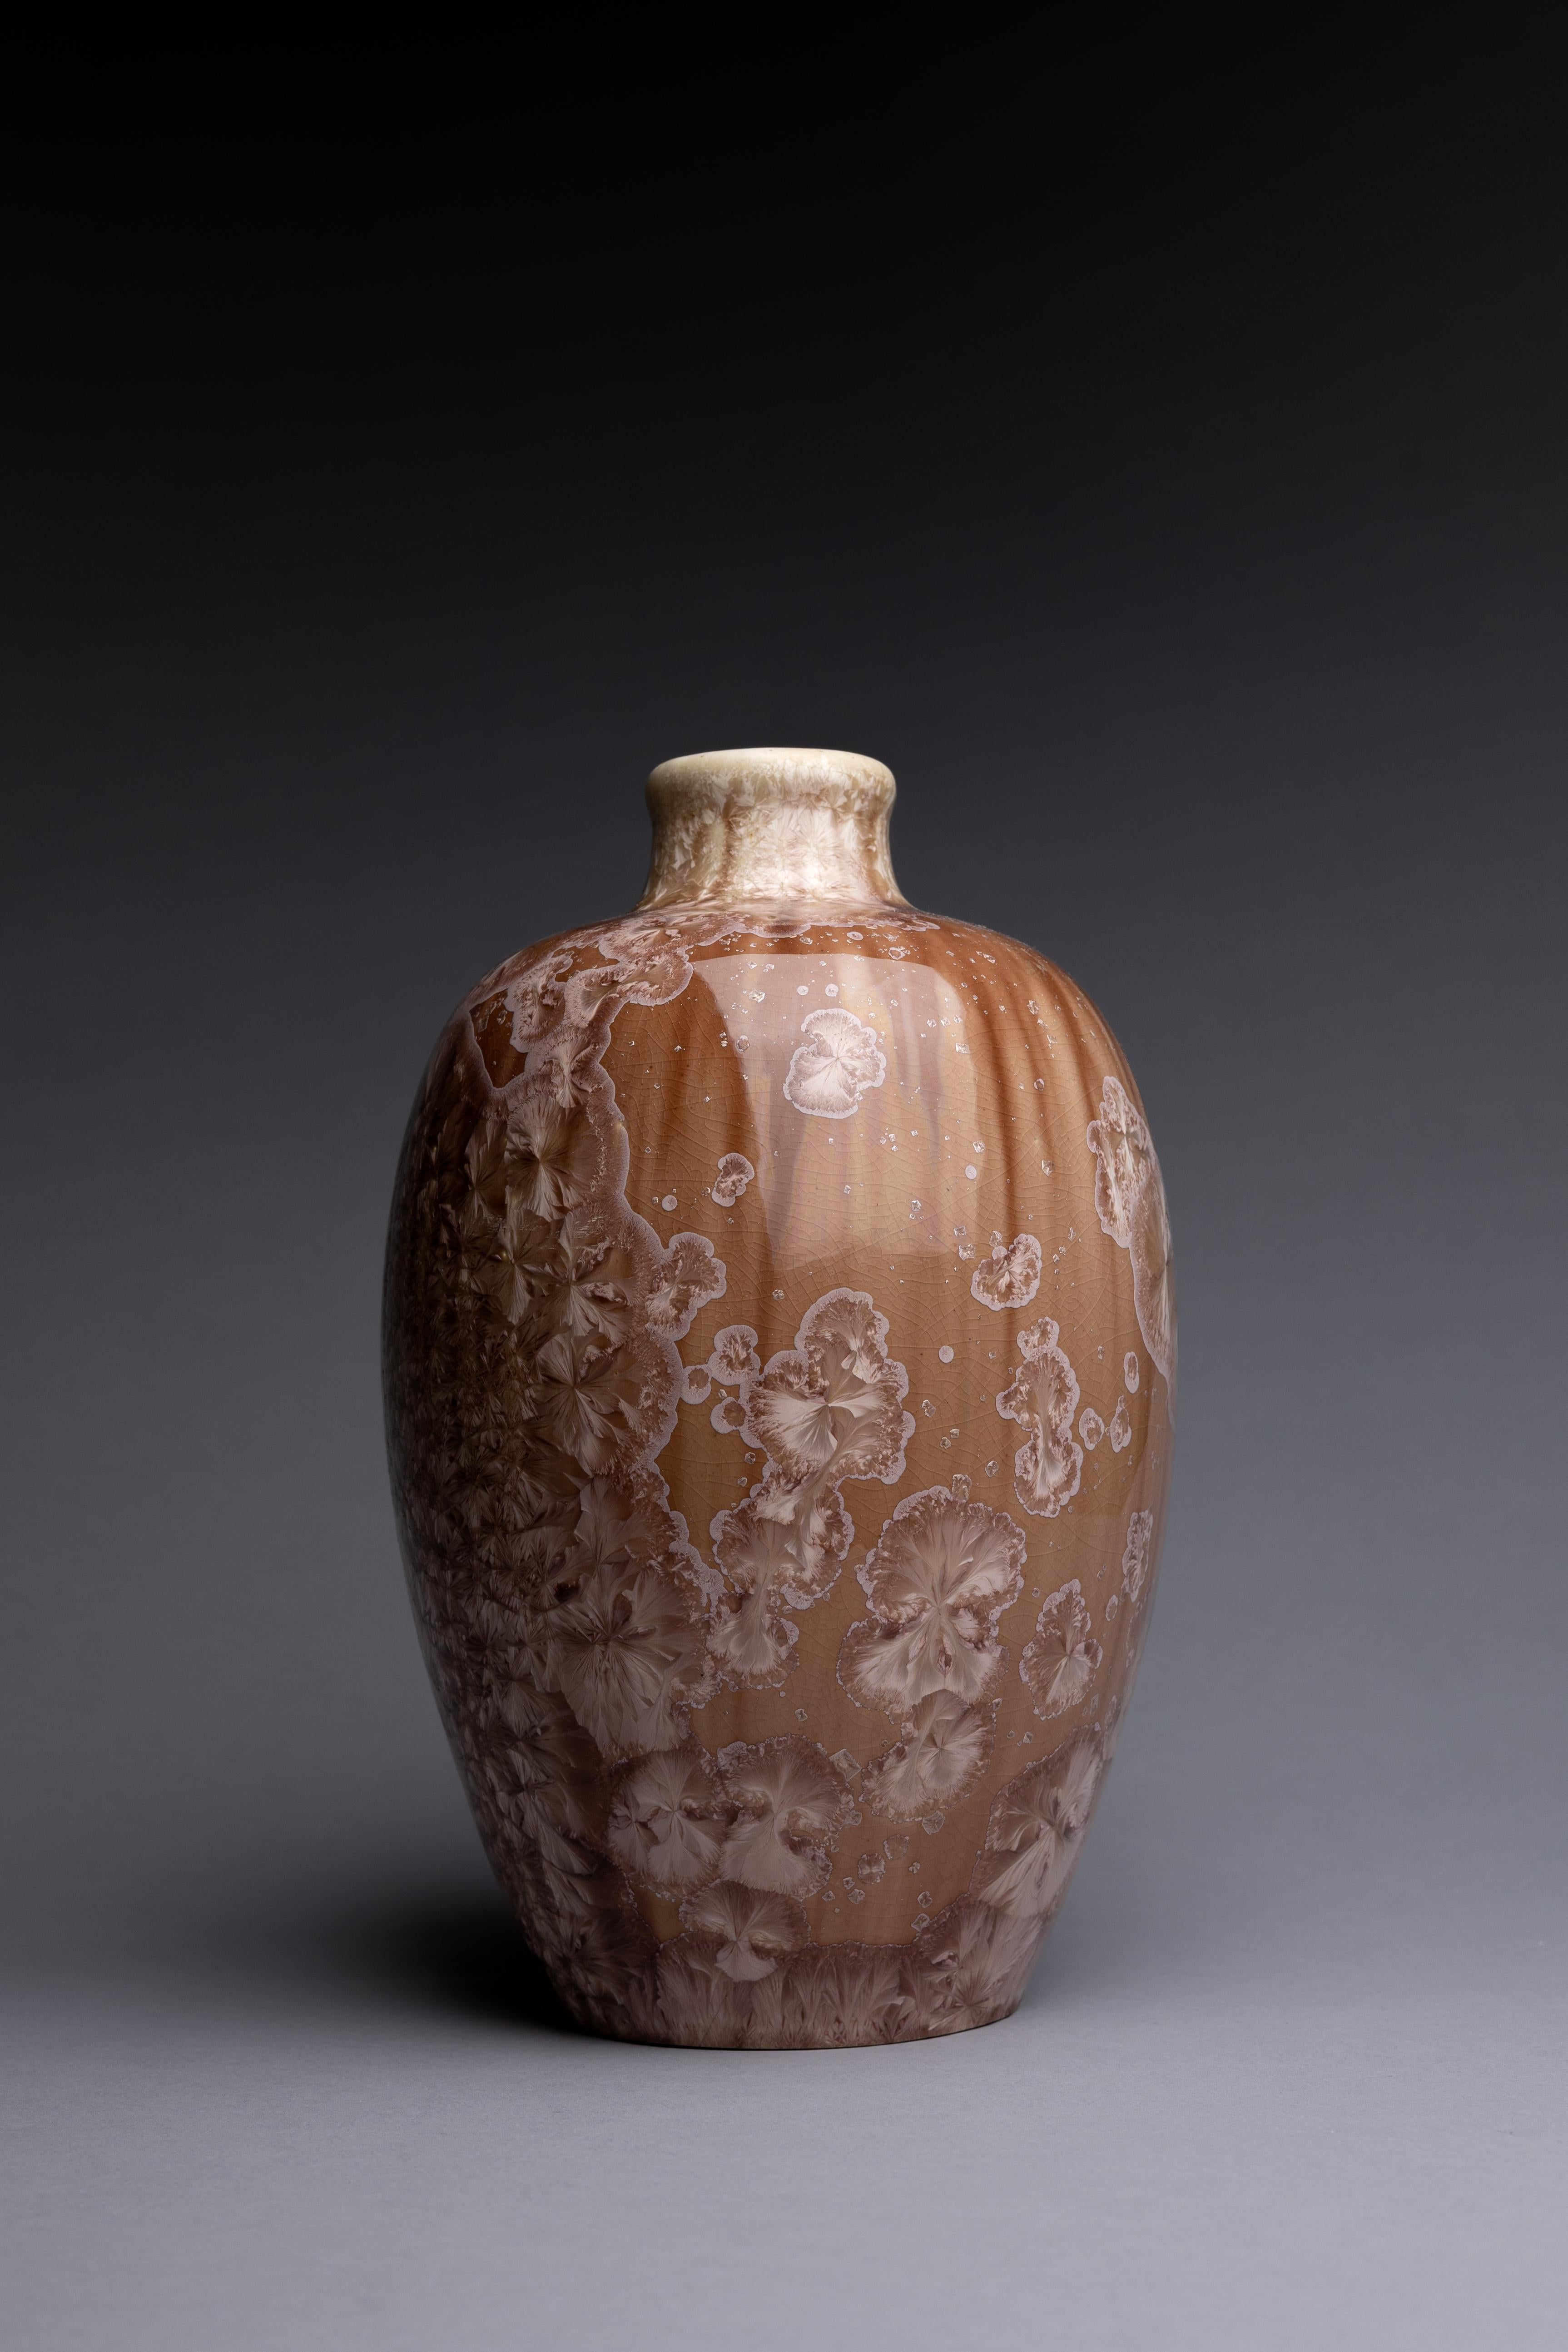 Vase en porcelaine cristalline, produit par les frères Mougin vers 1910.

Une somptueuse glaçure cristalline recouvre ce vase en porcelaine, fabriqué par les Frères Mougin vers 1910. Après avoir étudié les techniques de la céramique à Sèvres, Joseph